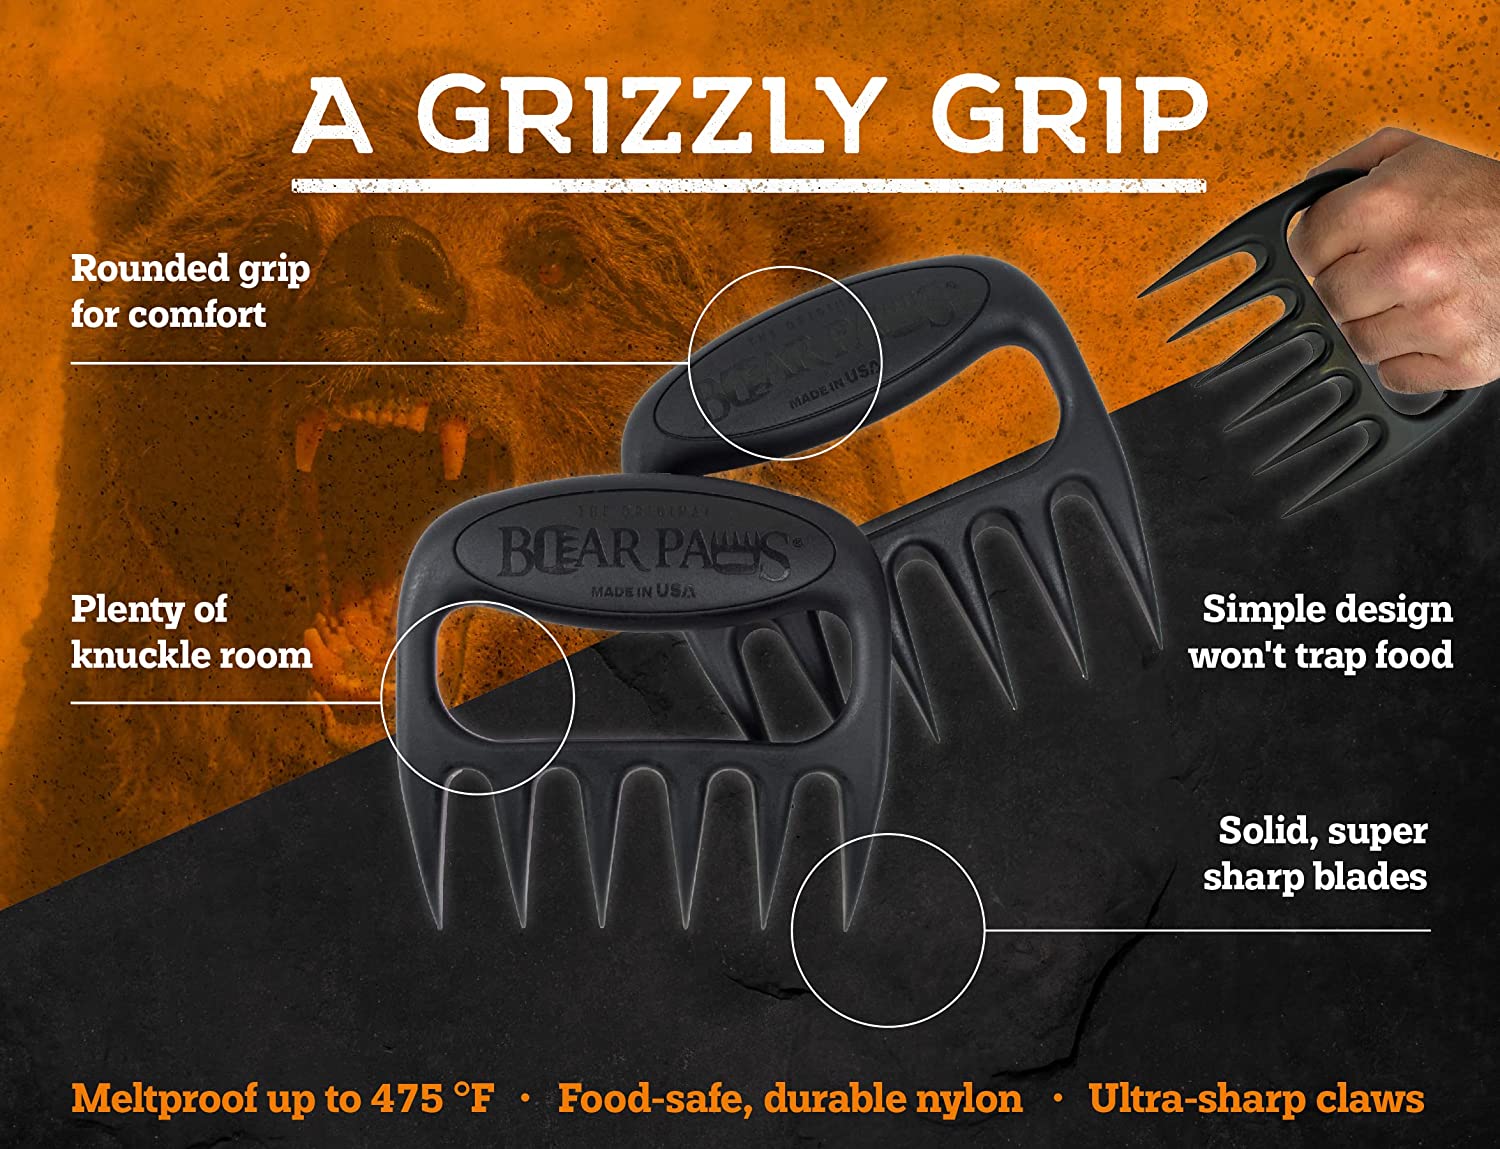 Wood Grill Scraper – Bear Paw Distribution